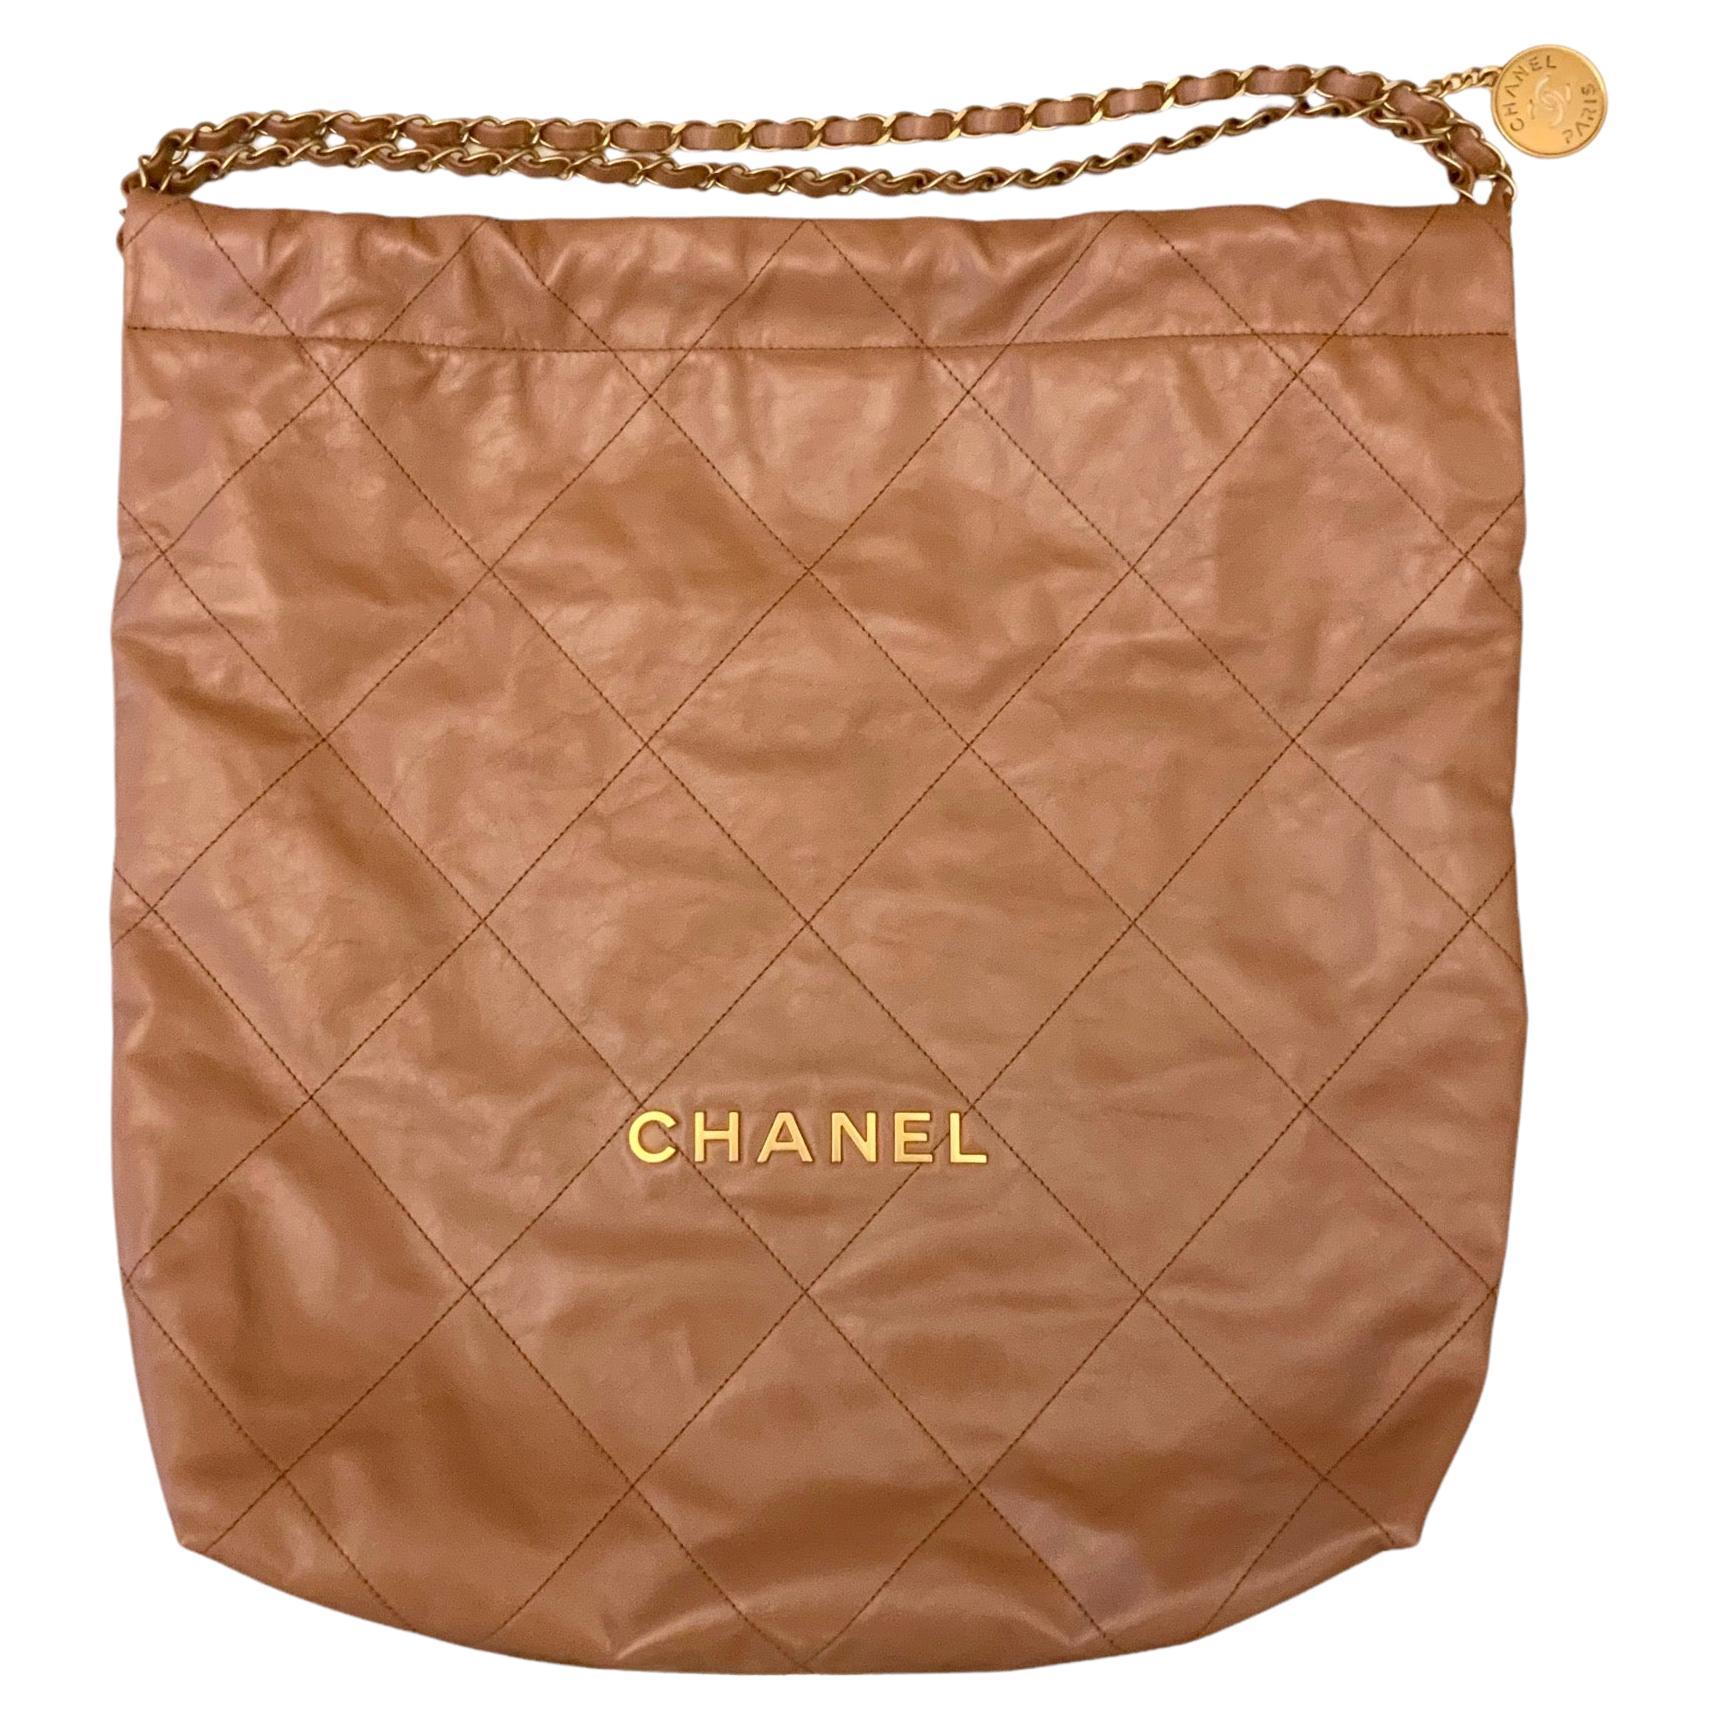 Camel Chanel Bag - 14 For Sale on 1stDibs  chanel camel color bag, camel  brown chanel bag, camel color chanel bag